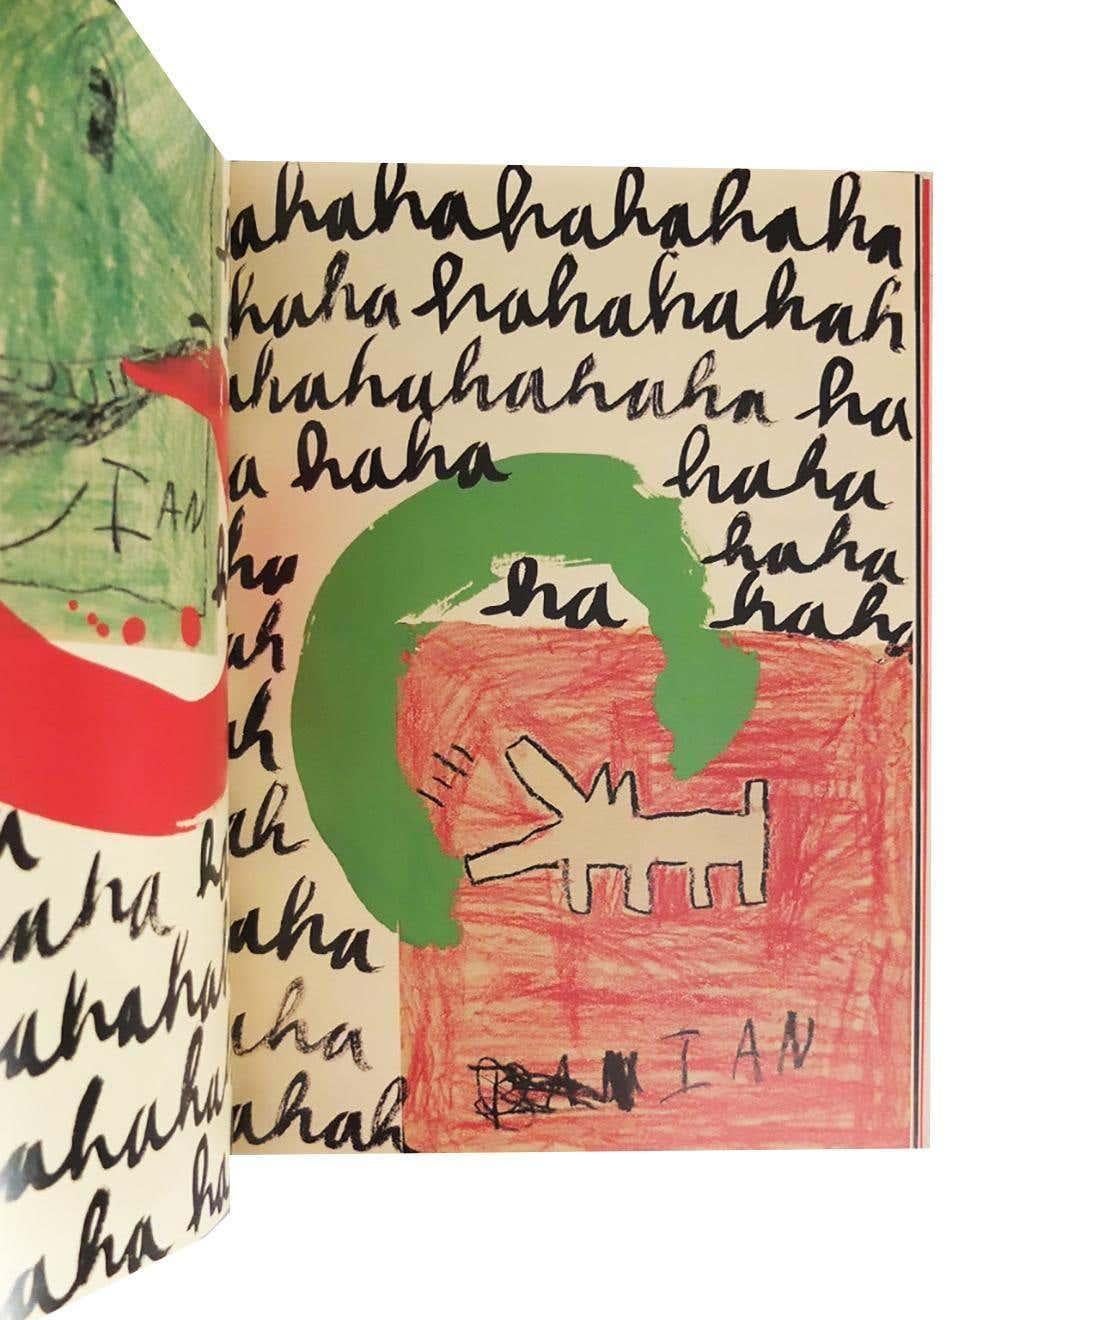 Eight Ball de Keith Haring :
Superbe monographie de Keith Haring de 1989 présentant des images remarquables de l'artiste new-yorkais légendaire, basées sur des collages. De belles couleurs vives dans tout le bâtiment. 

Livre d'artiste relié ; 46